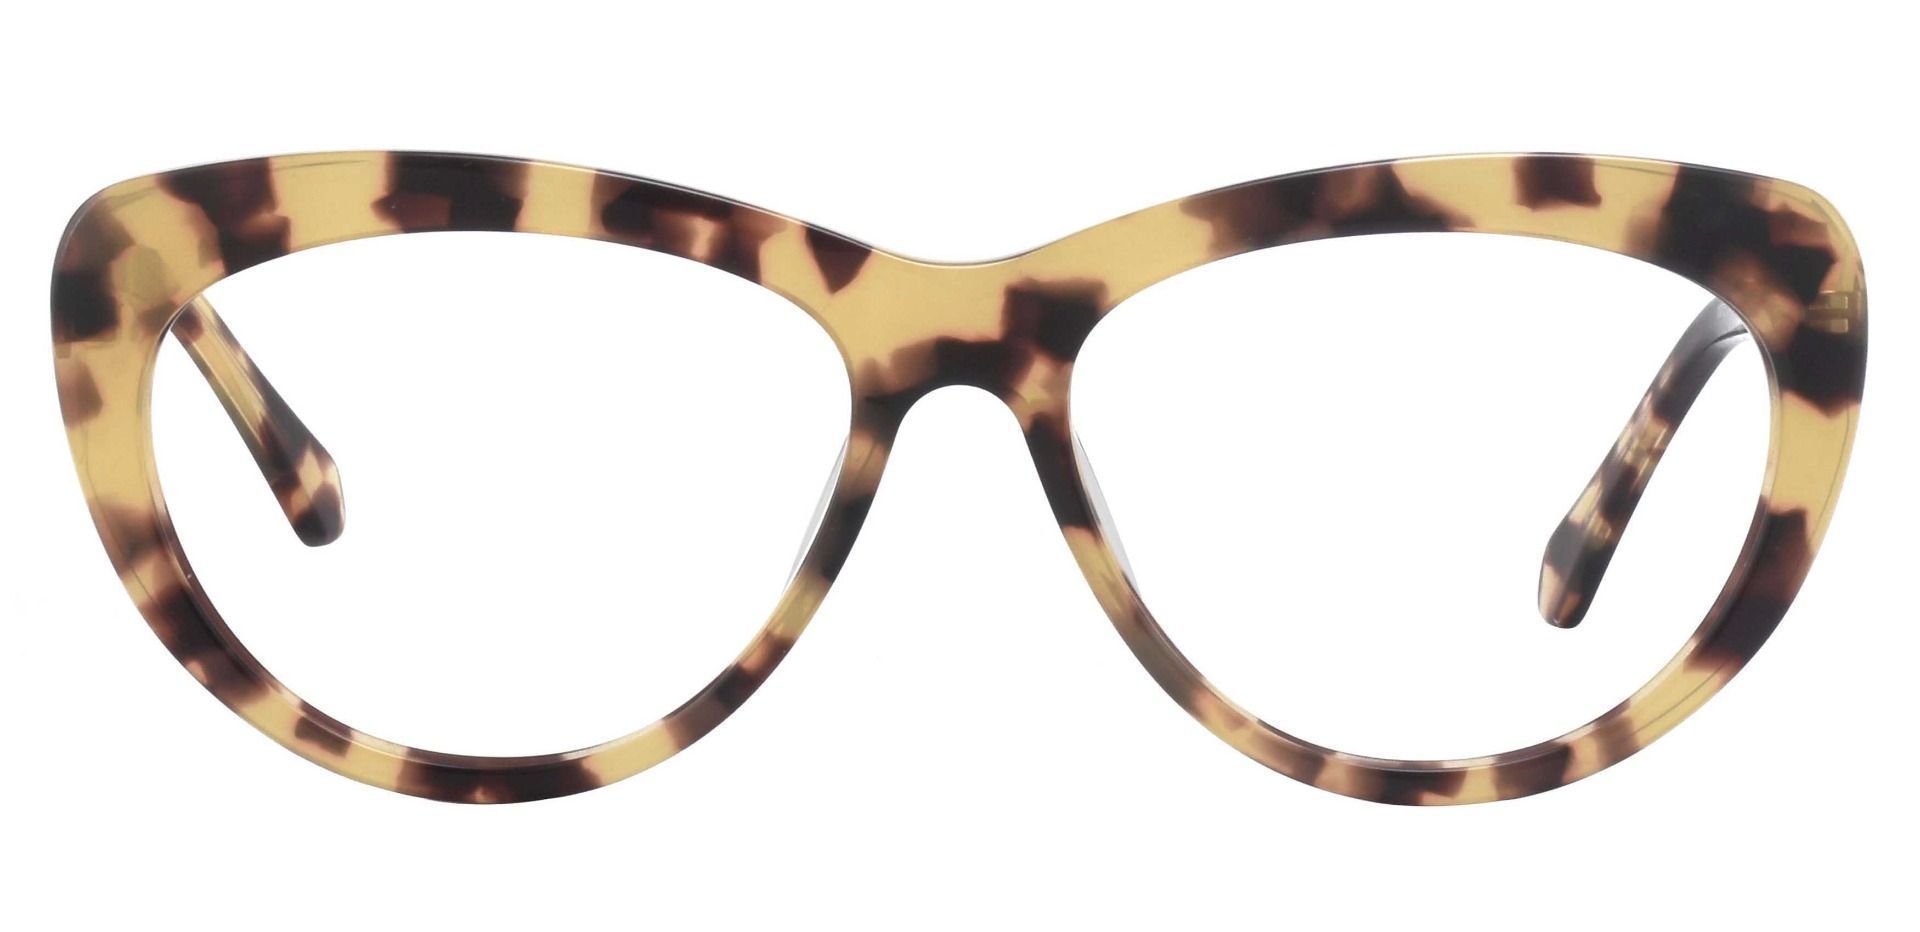 Monica Cat Eye Prescription Glasses - Tortoise | Women's Eyeglasses ...